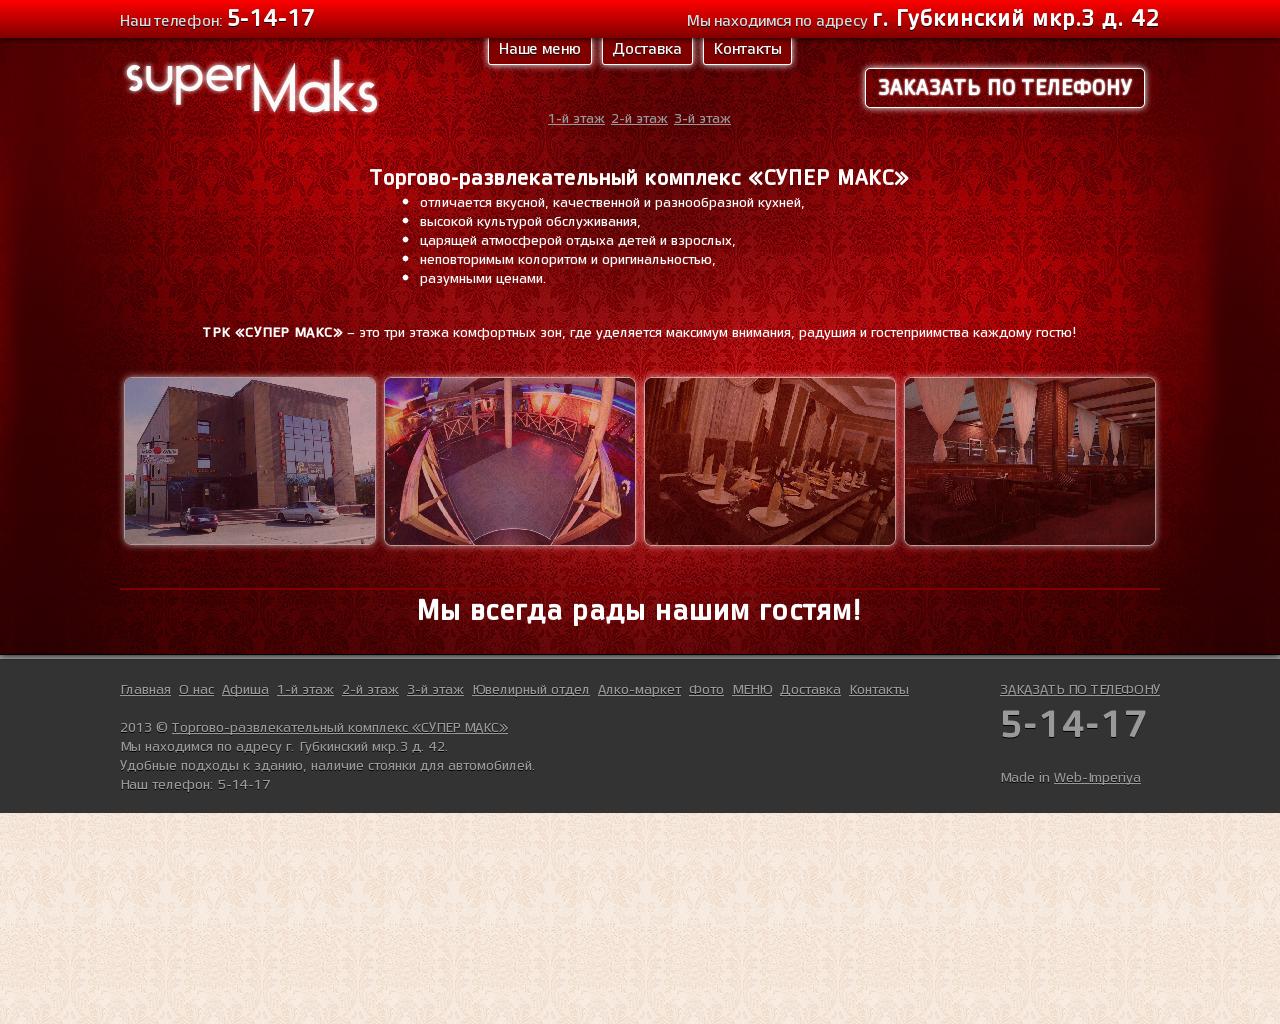 Изображение сайта supermaks.ru в разрешении 1280x1024